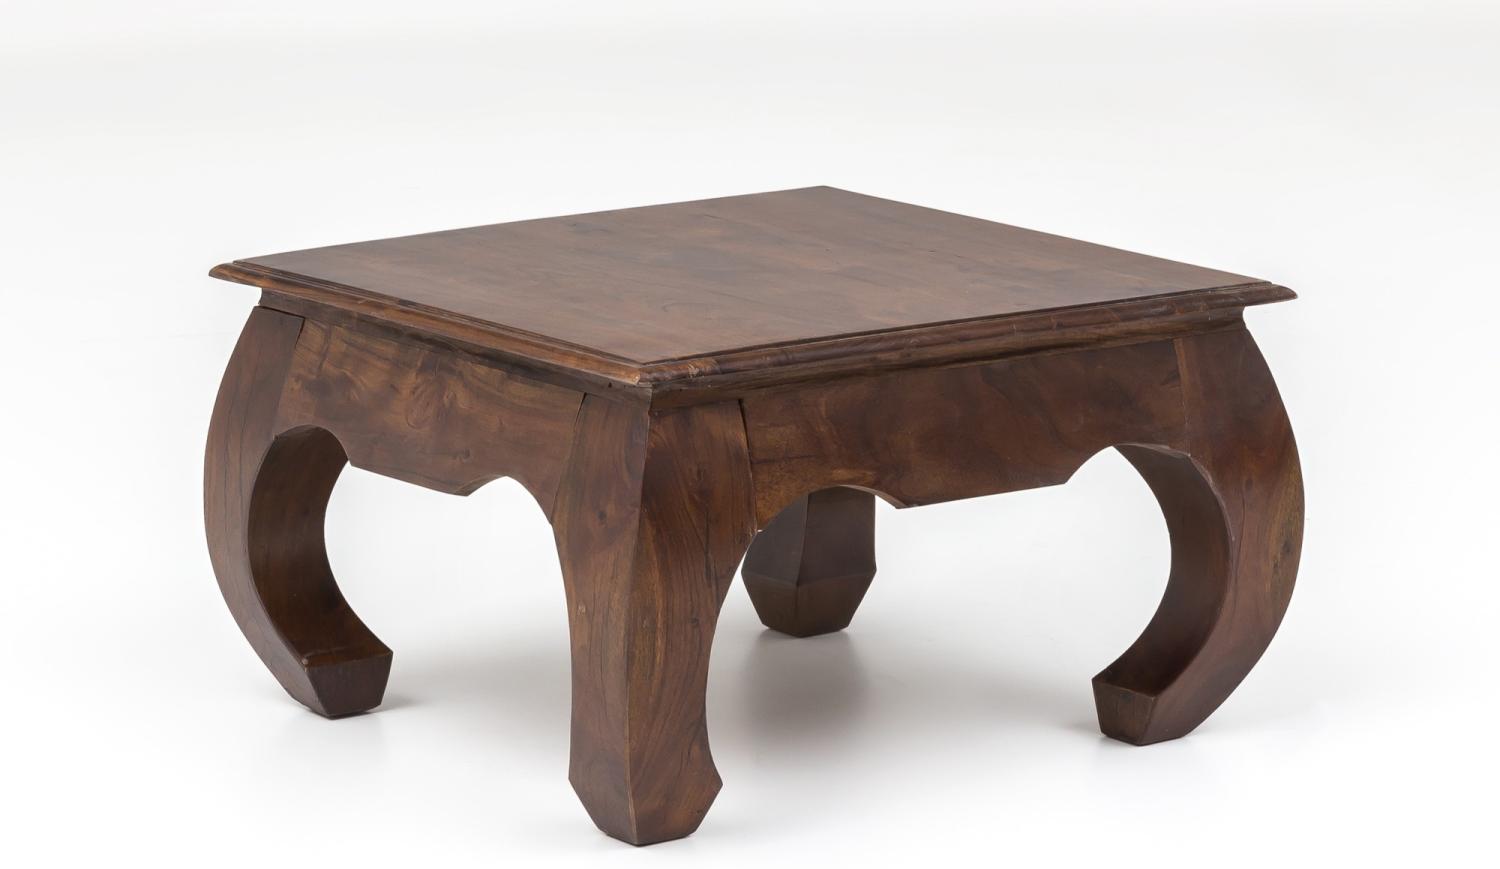 Unikat Couchtisch Massivholz Akazie 75cm Wohnzimmertisch Holz Tisch Handarbeit Bild 1